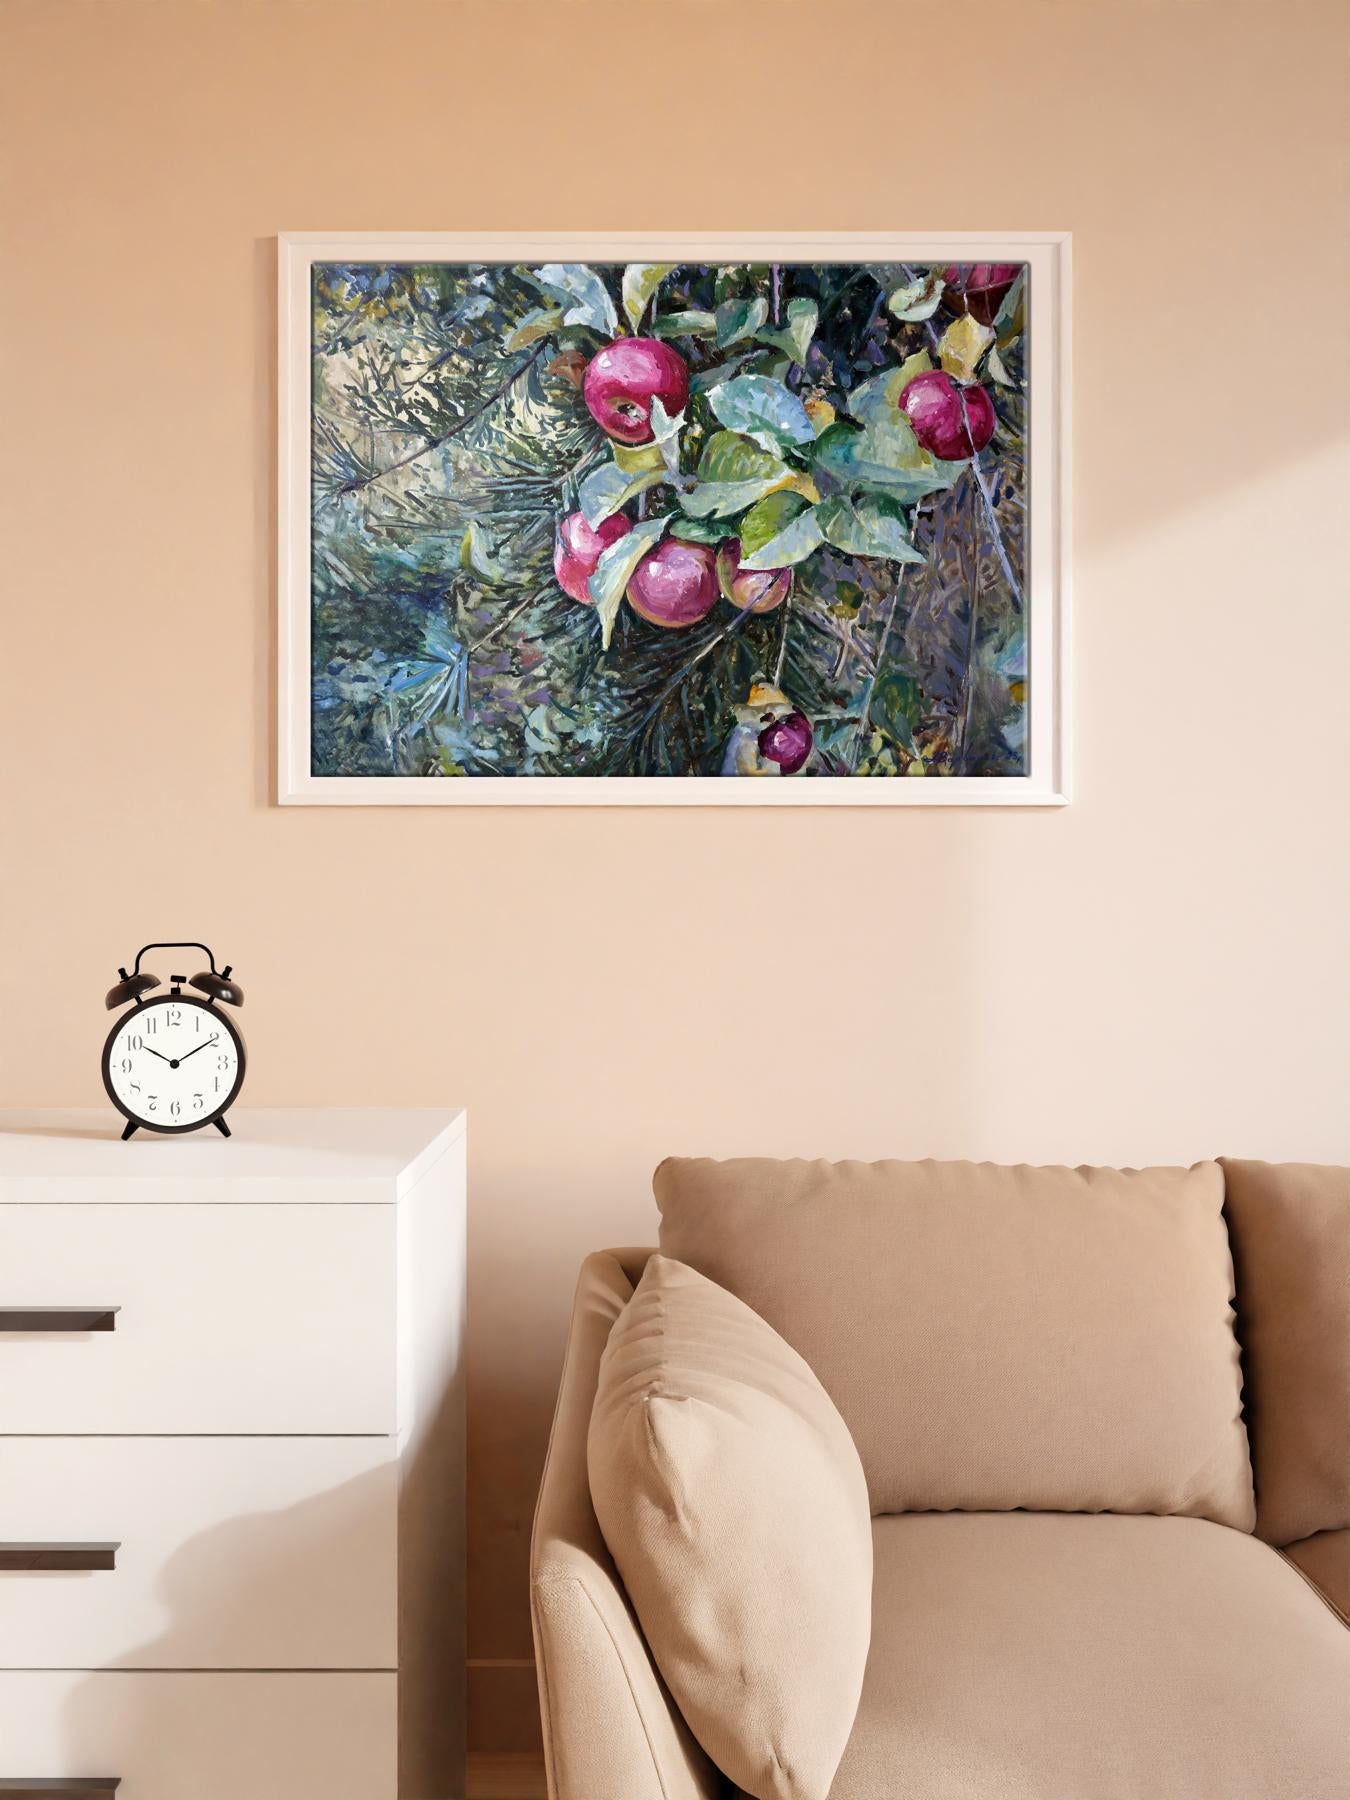 Oil painting September forest paradise apples Varvarov Anatoly Viktorovich